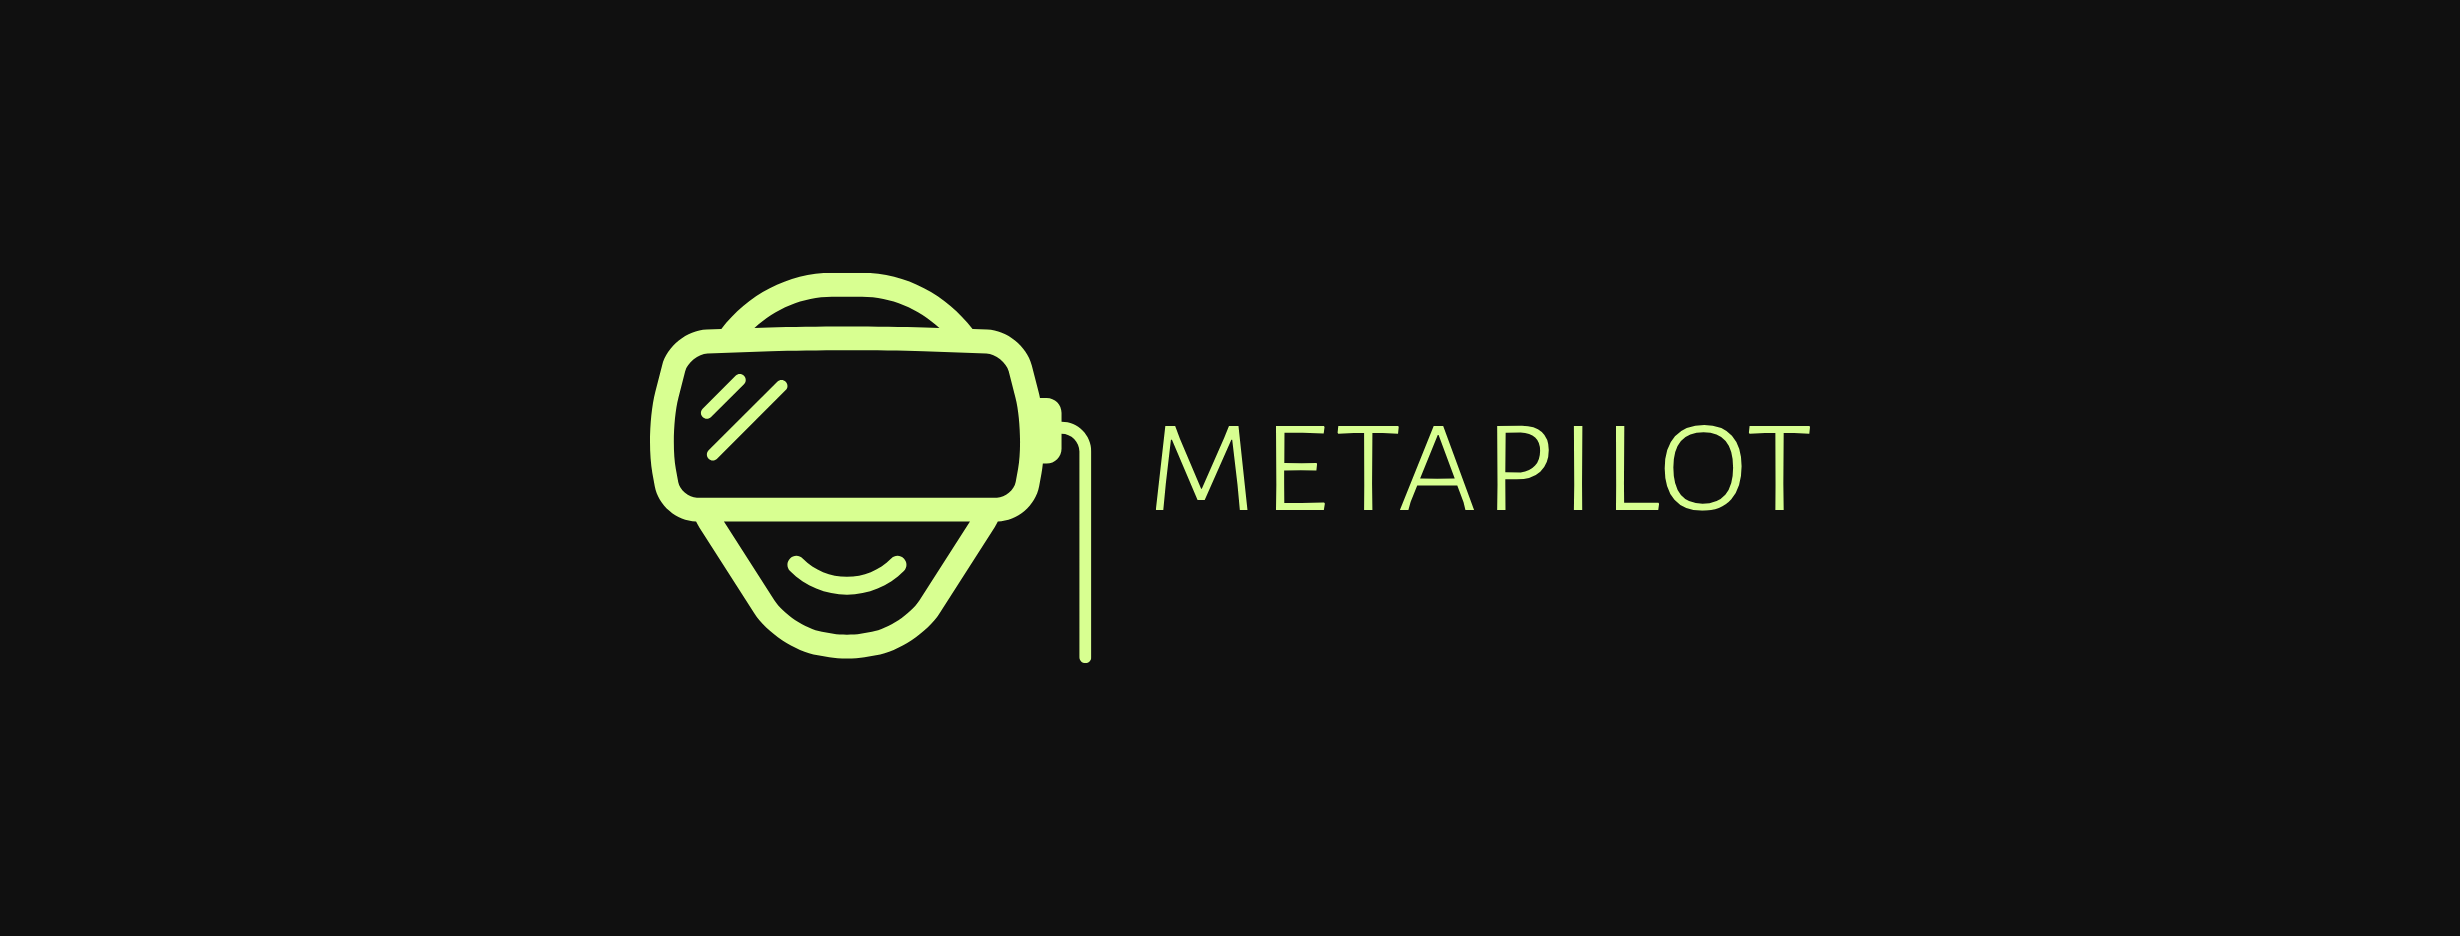 Metapilot